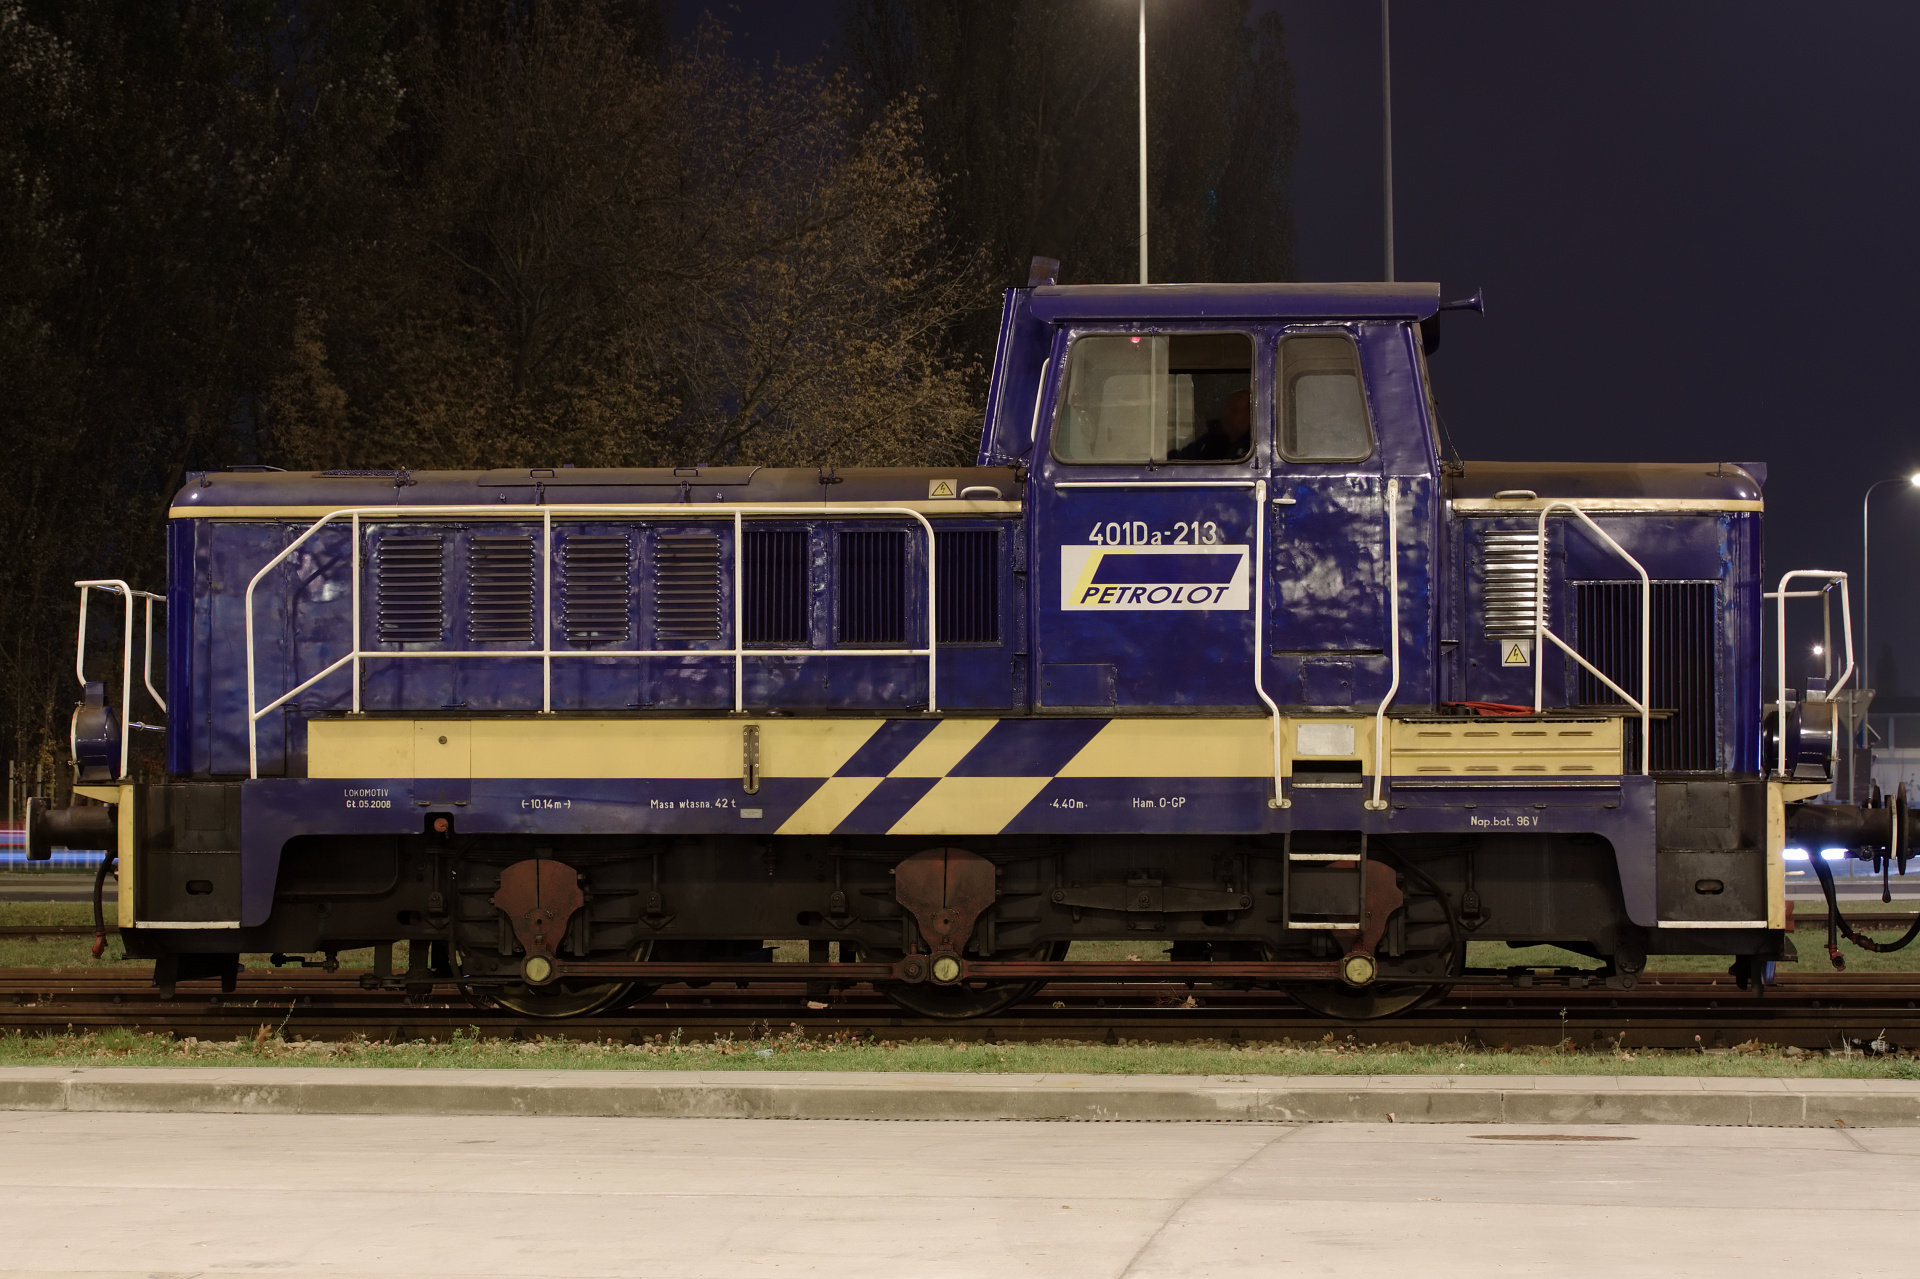 Fablok 401Da-213 (Pojazdy » Pociągi i lokomotywy)